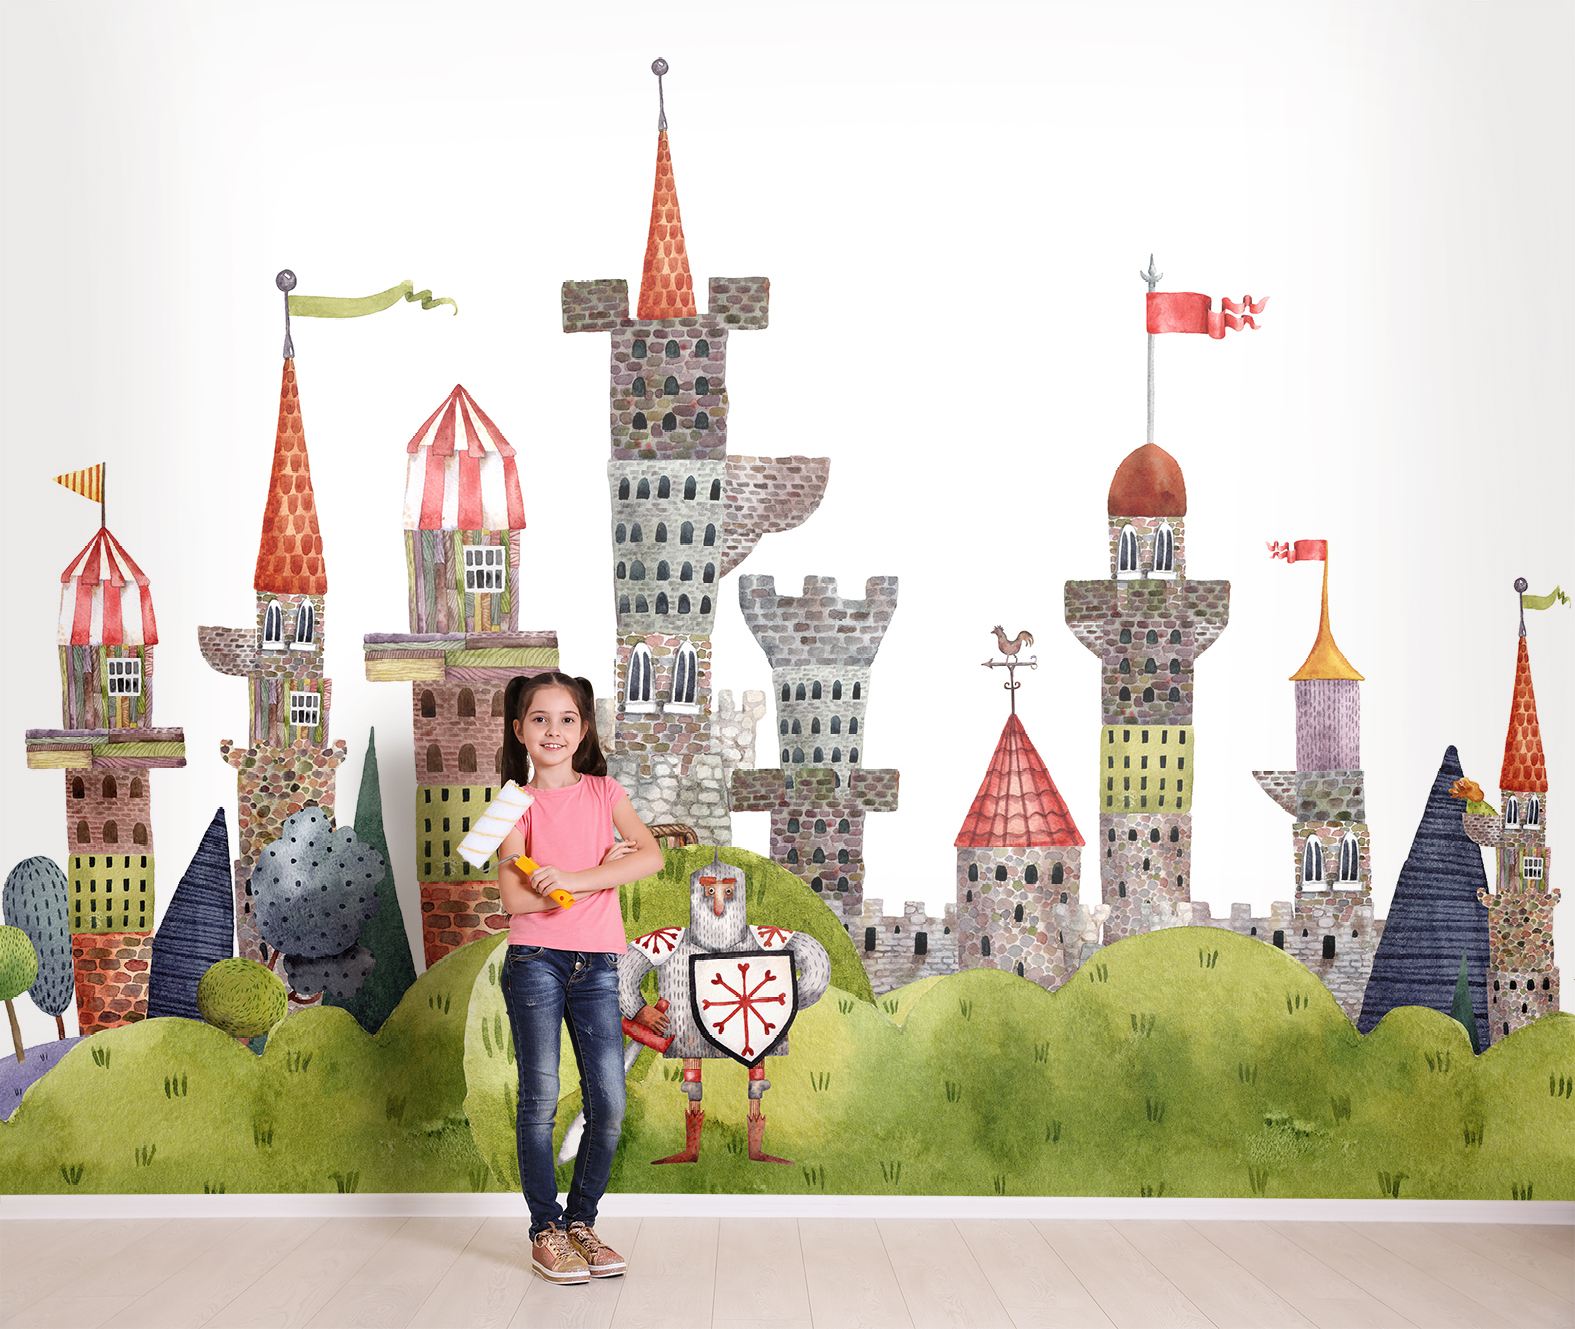 Фотообои Photostena Сказочный замок и рыцарь 3,5 x 2,6 м тени для девочки сказочный патруль